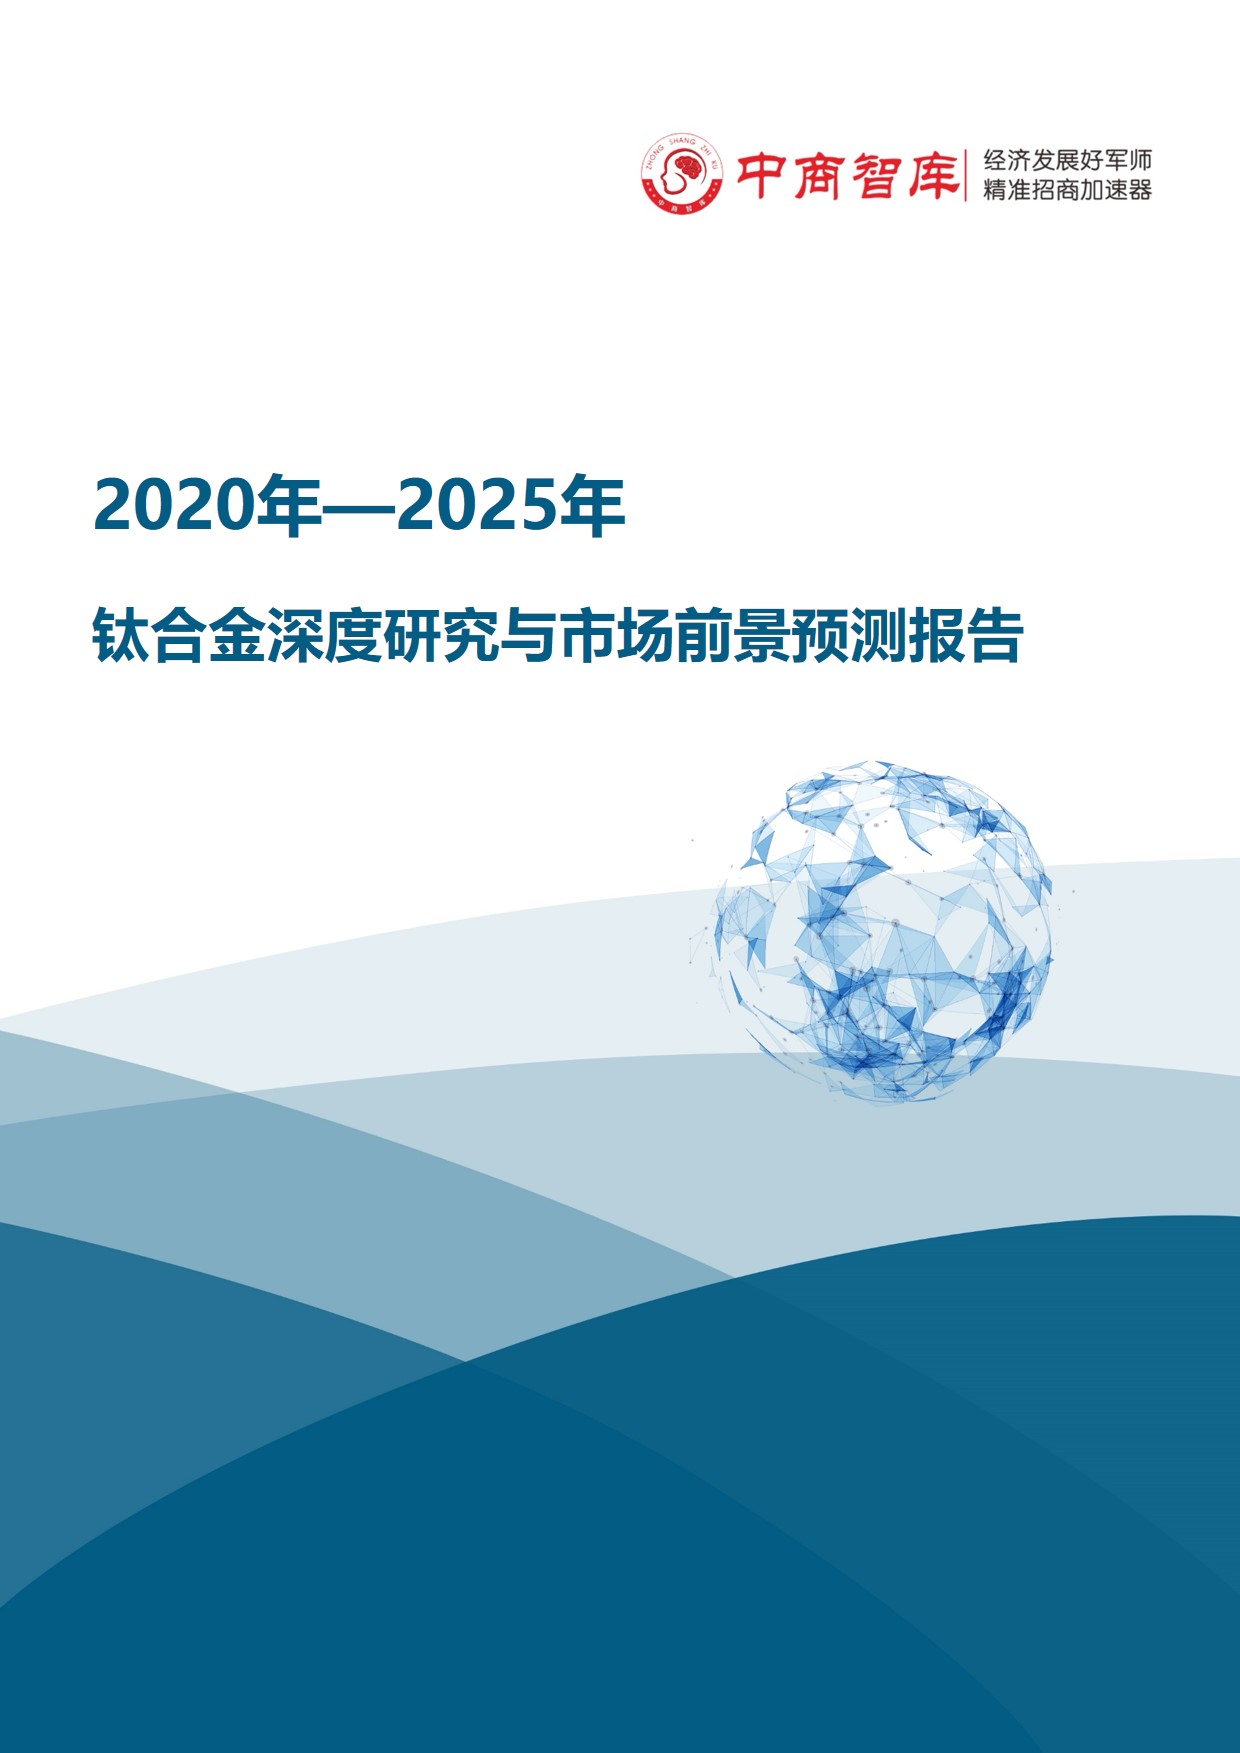 《2020-2025年钛合金行业深度研究与市场前景预测报告》